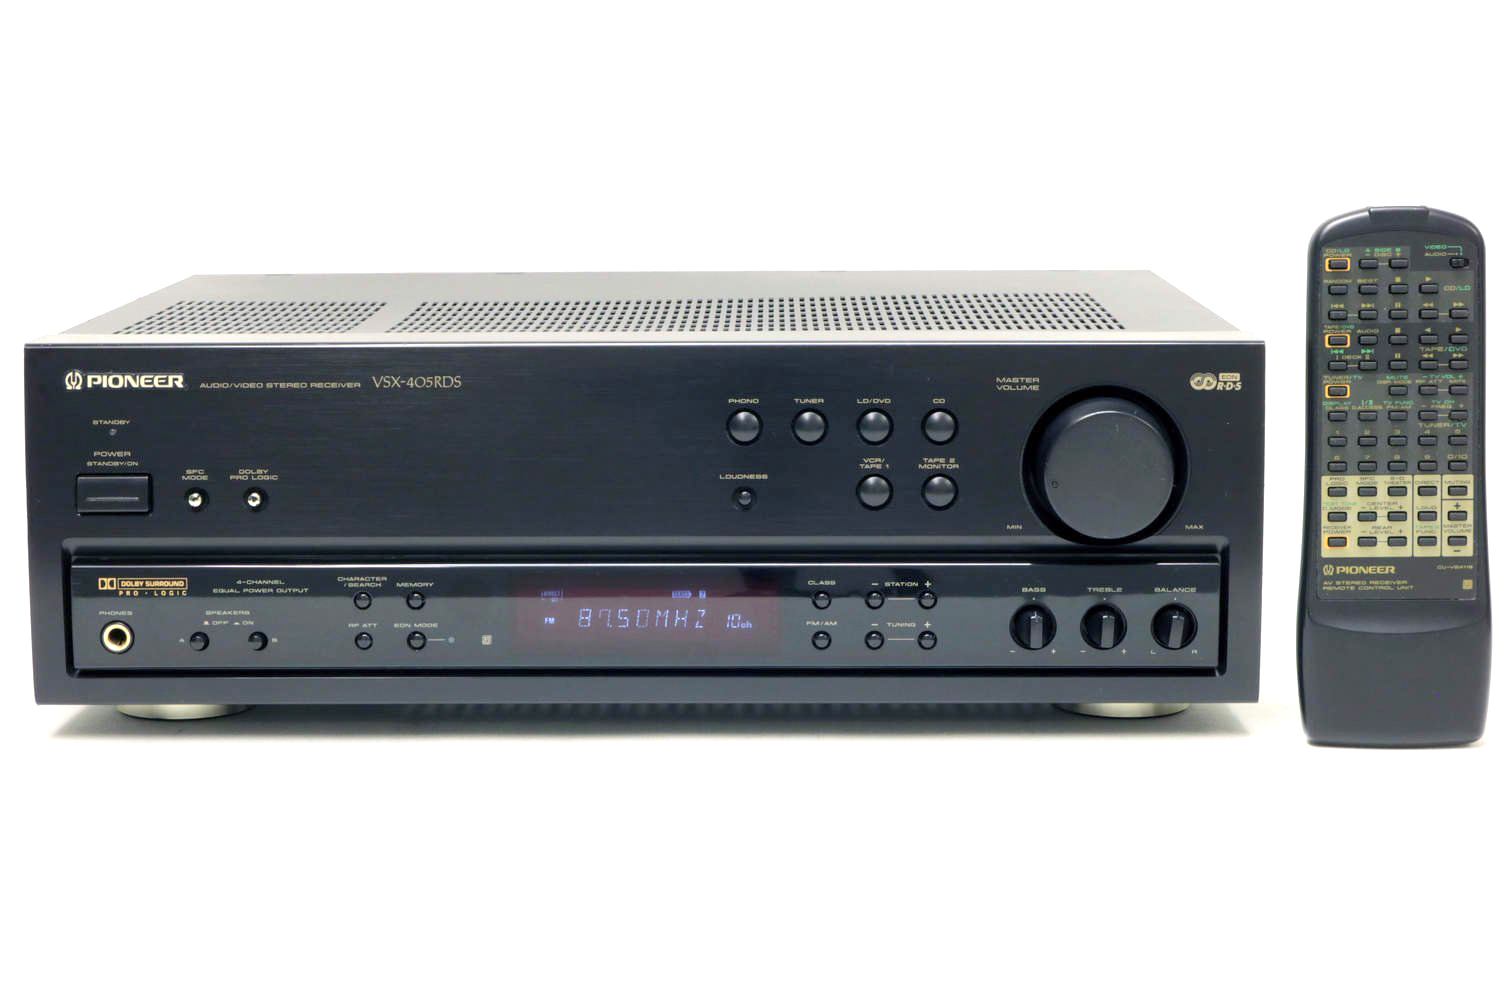 Pioneer VSX-405 RDS-1995.jpg